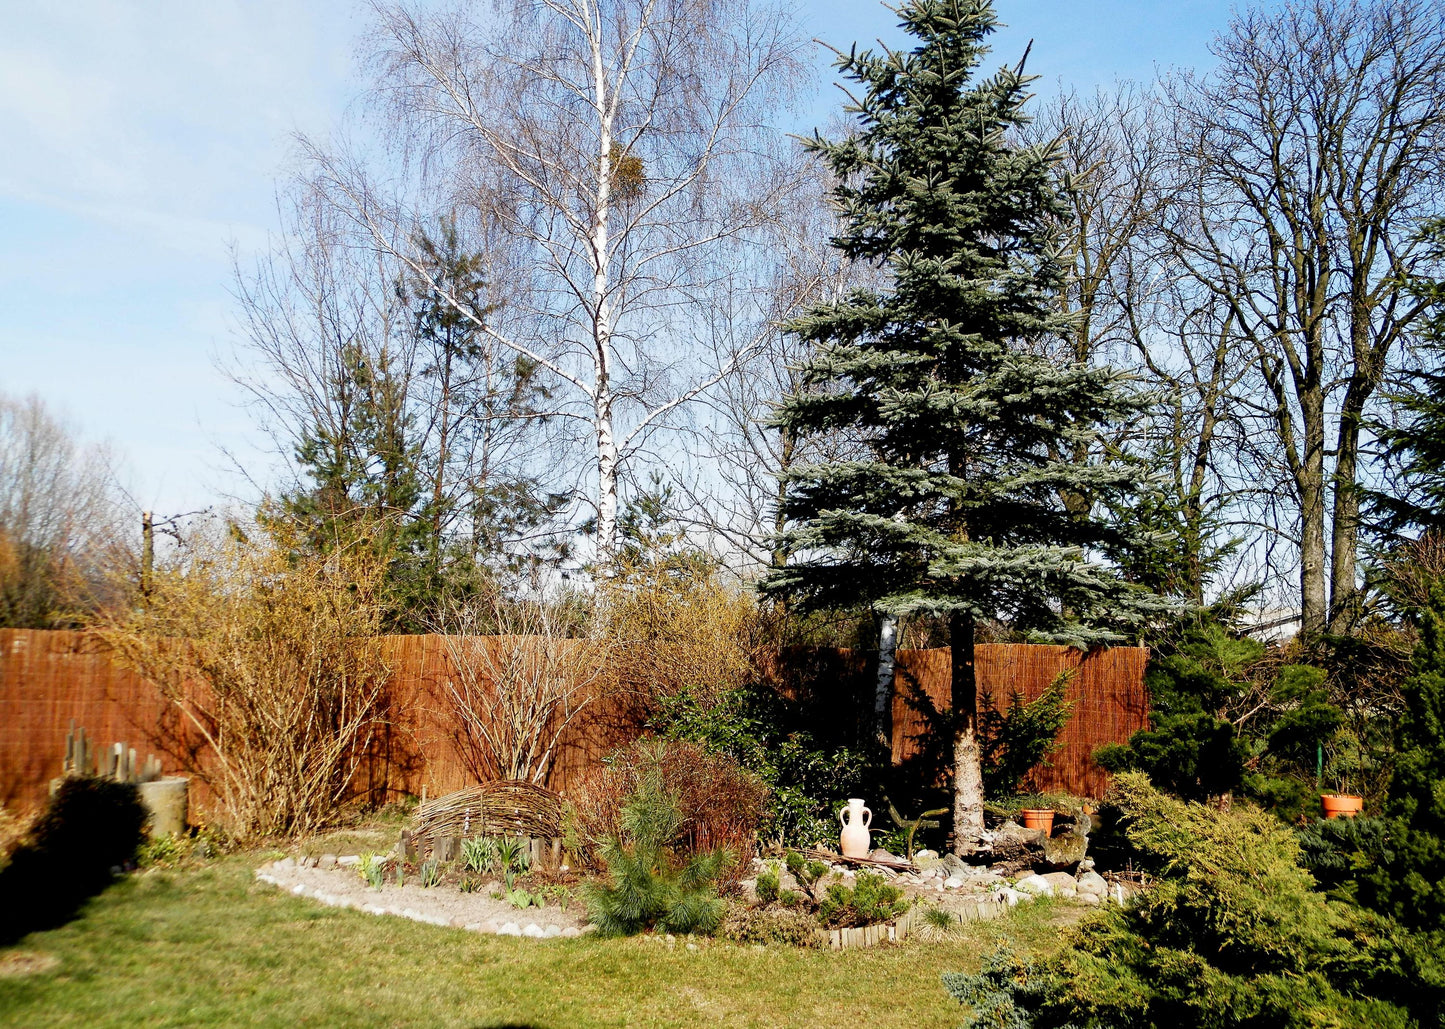 Weidematte 300x100 Sichtschutzmatte Garten Sichtschutz Weide Matte Zaun braun